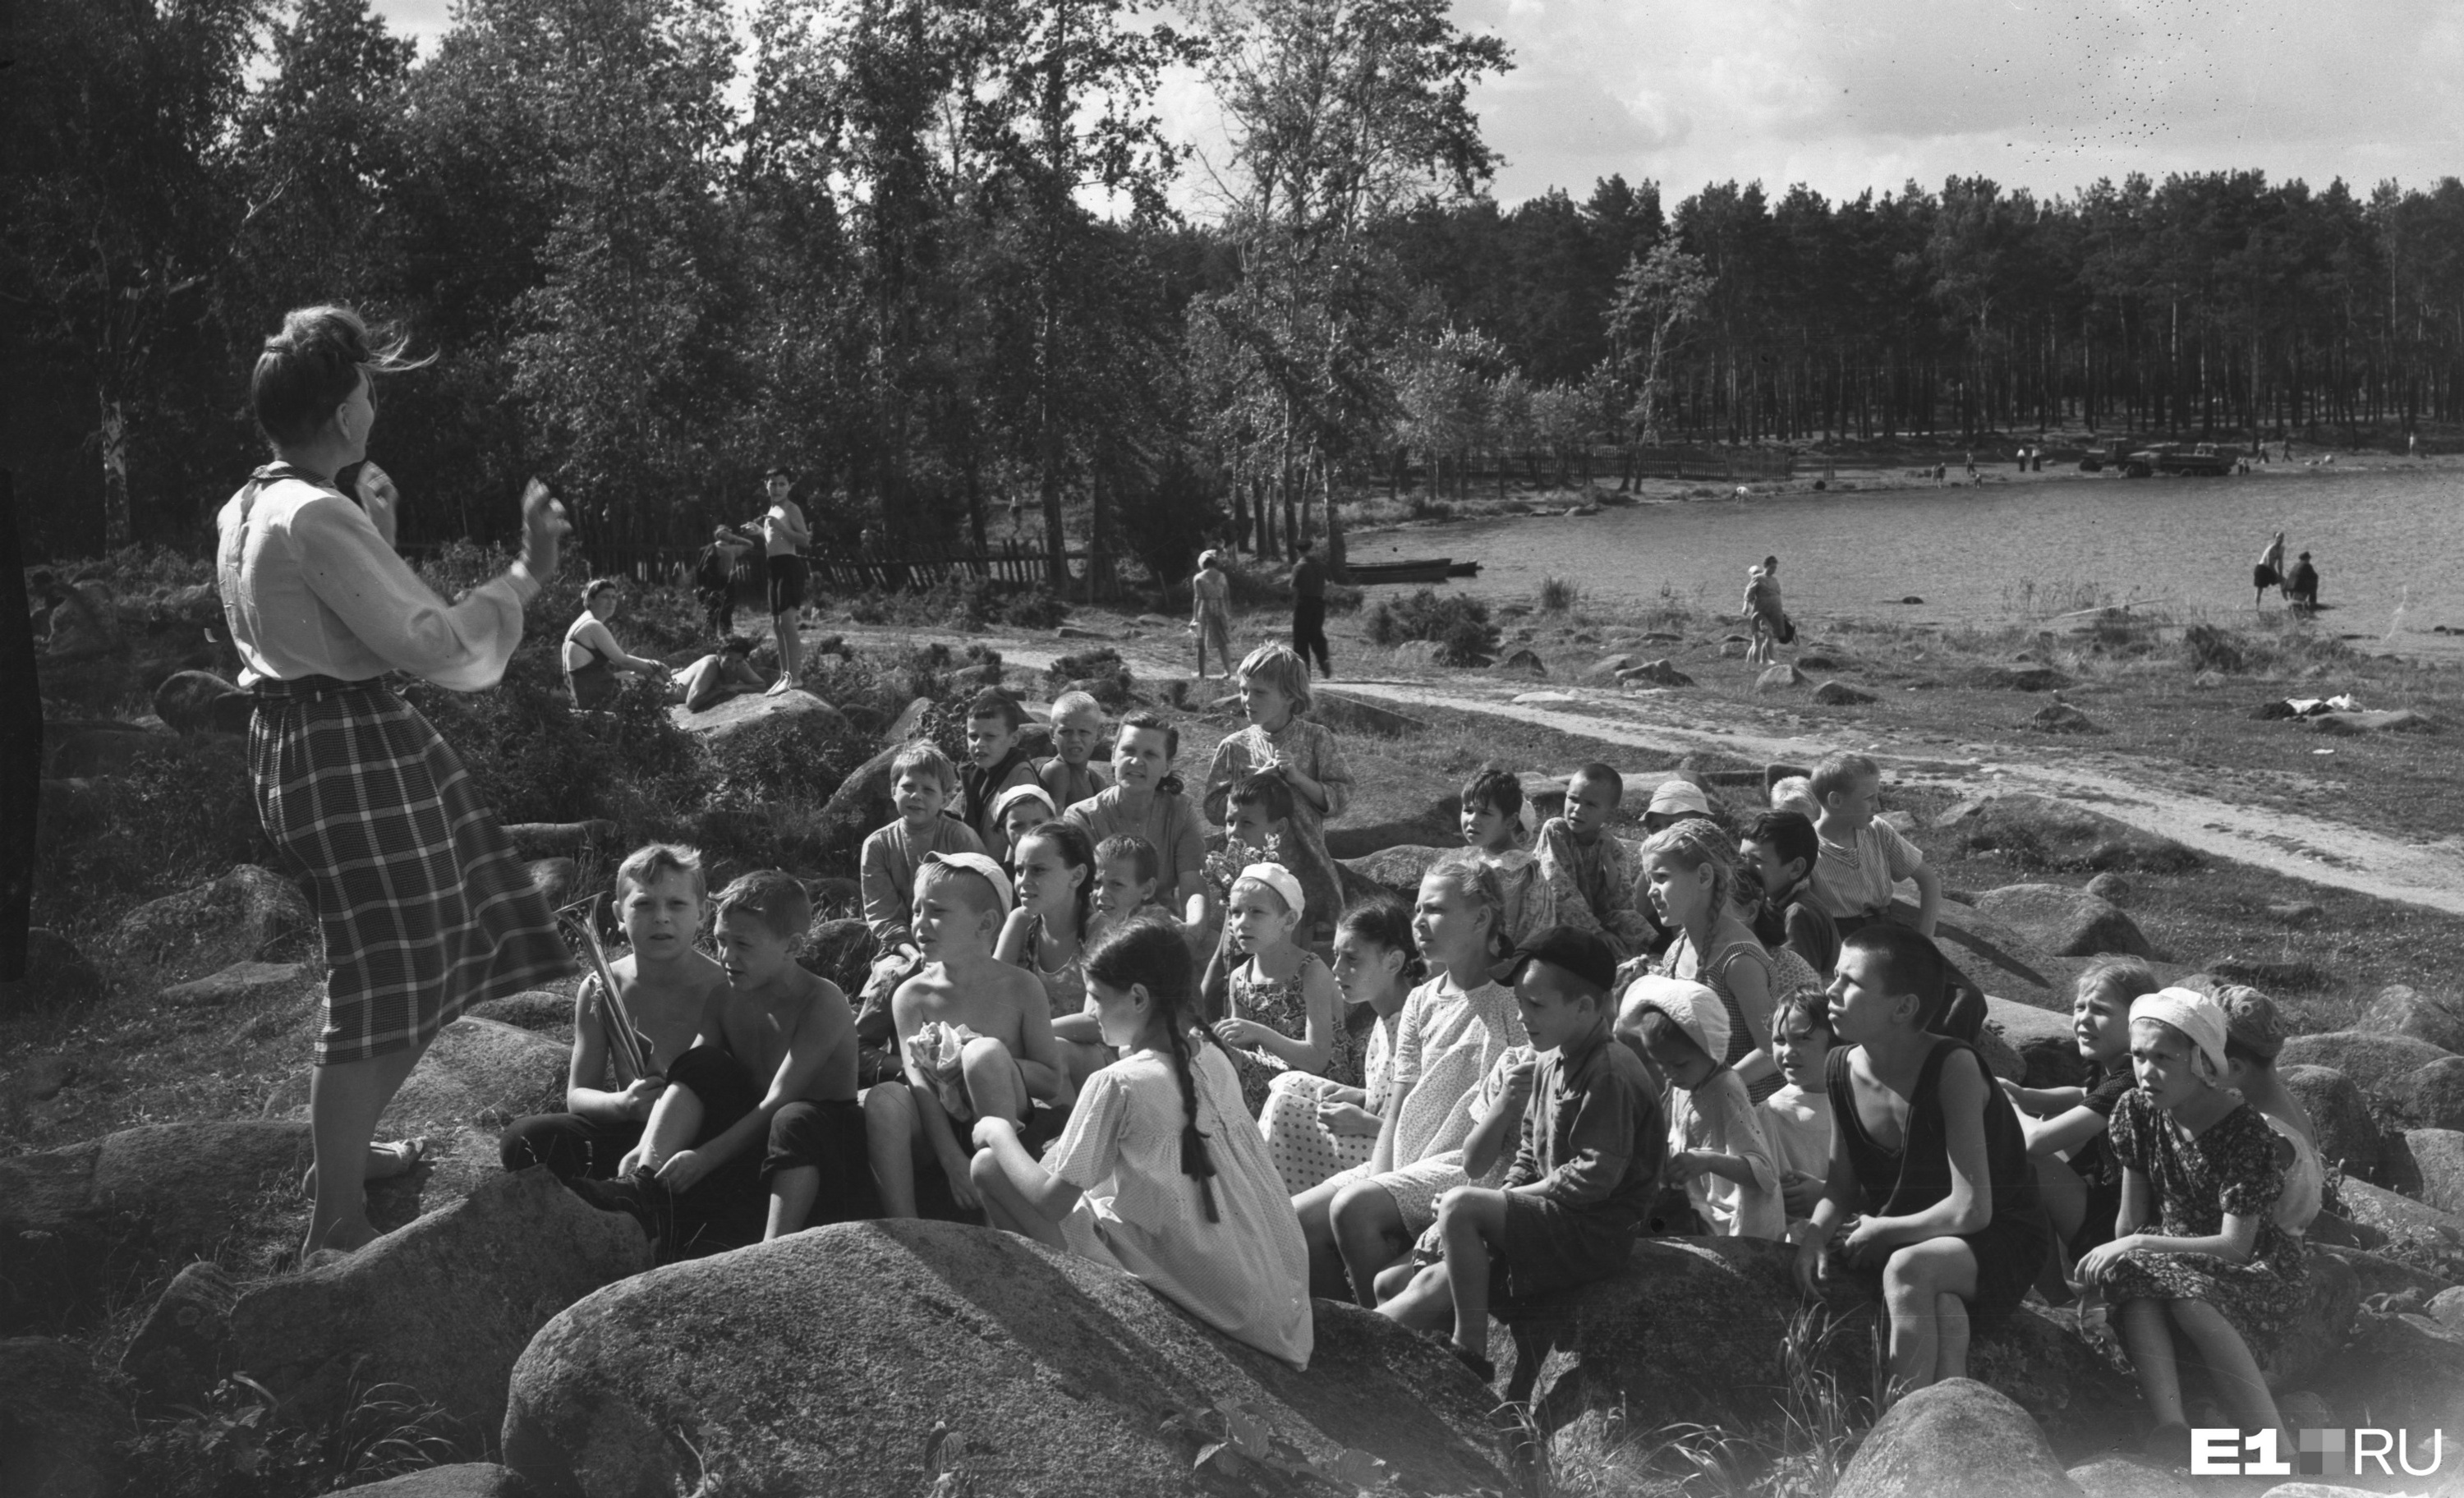 Дети на экскурсии на озере Шарташ. 1950 год. Интервью с директором парка о его состоянии сегодня <a href="https://www.e1.ru/news/spool/news_id-65225401.html" target="_blank" class="_">читайте здесь</a>